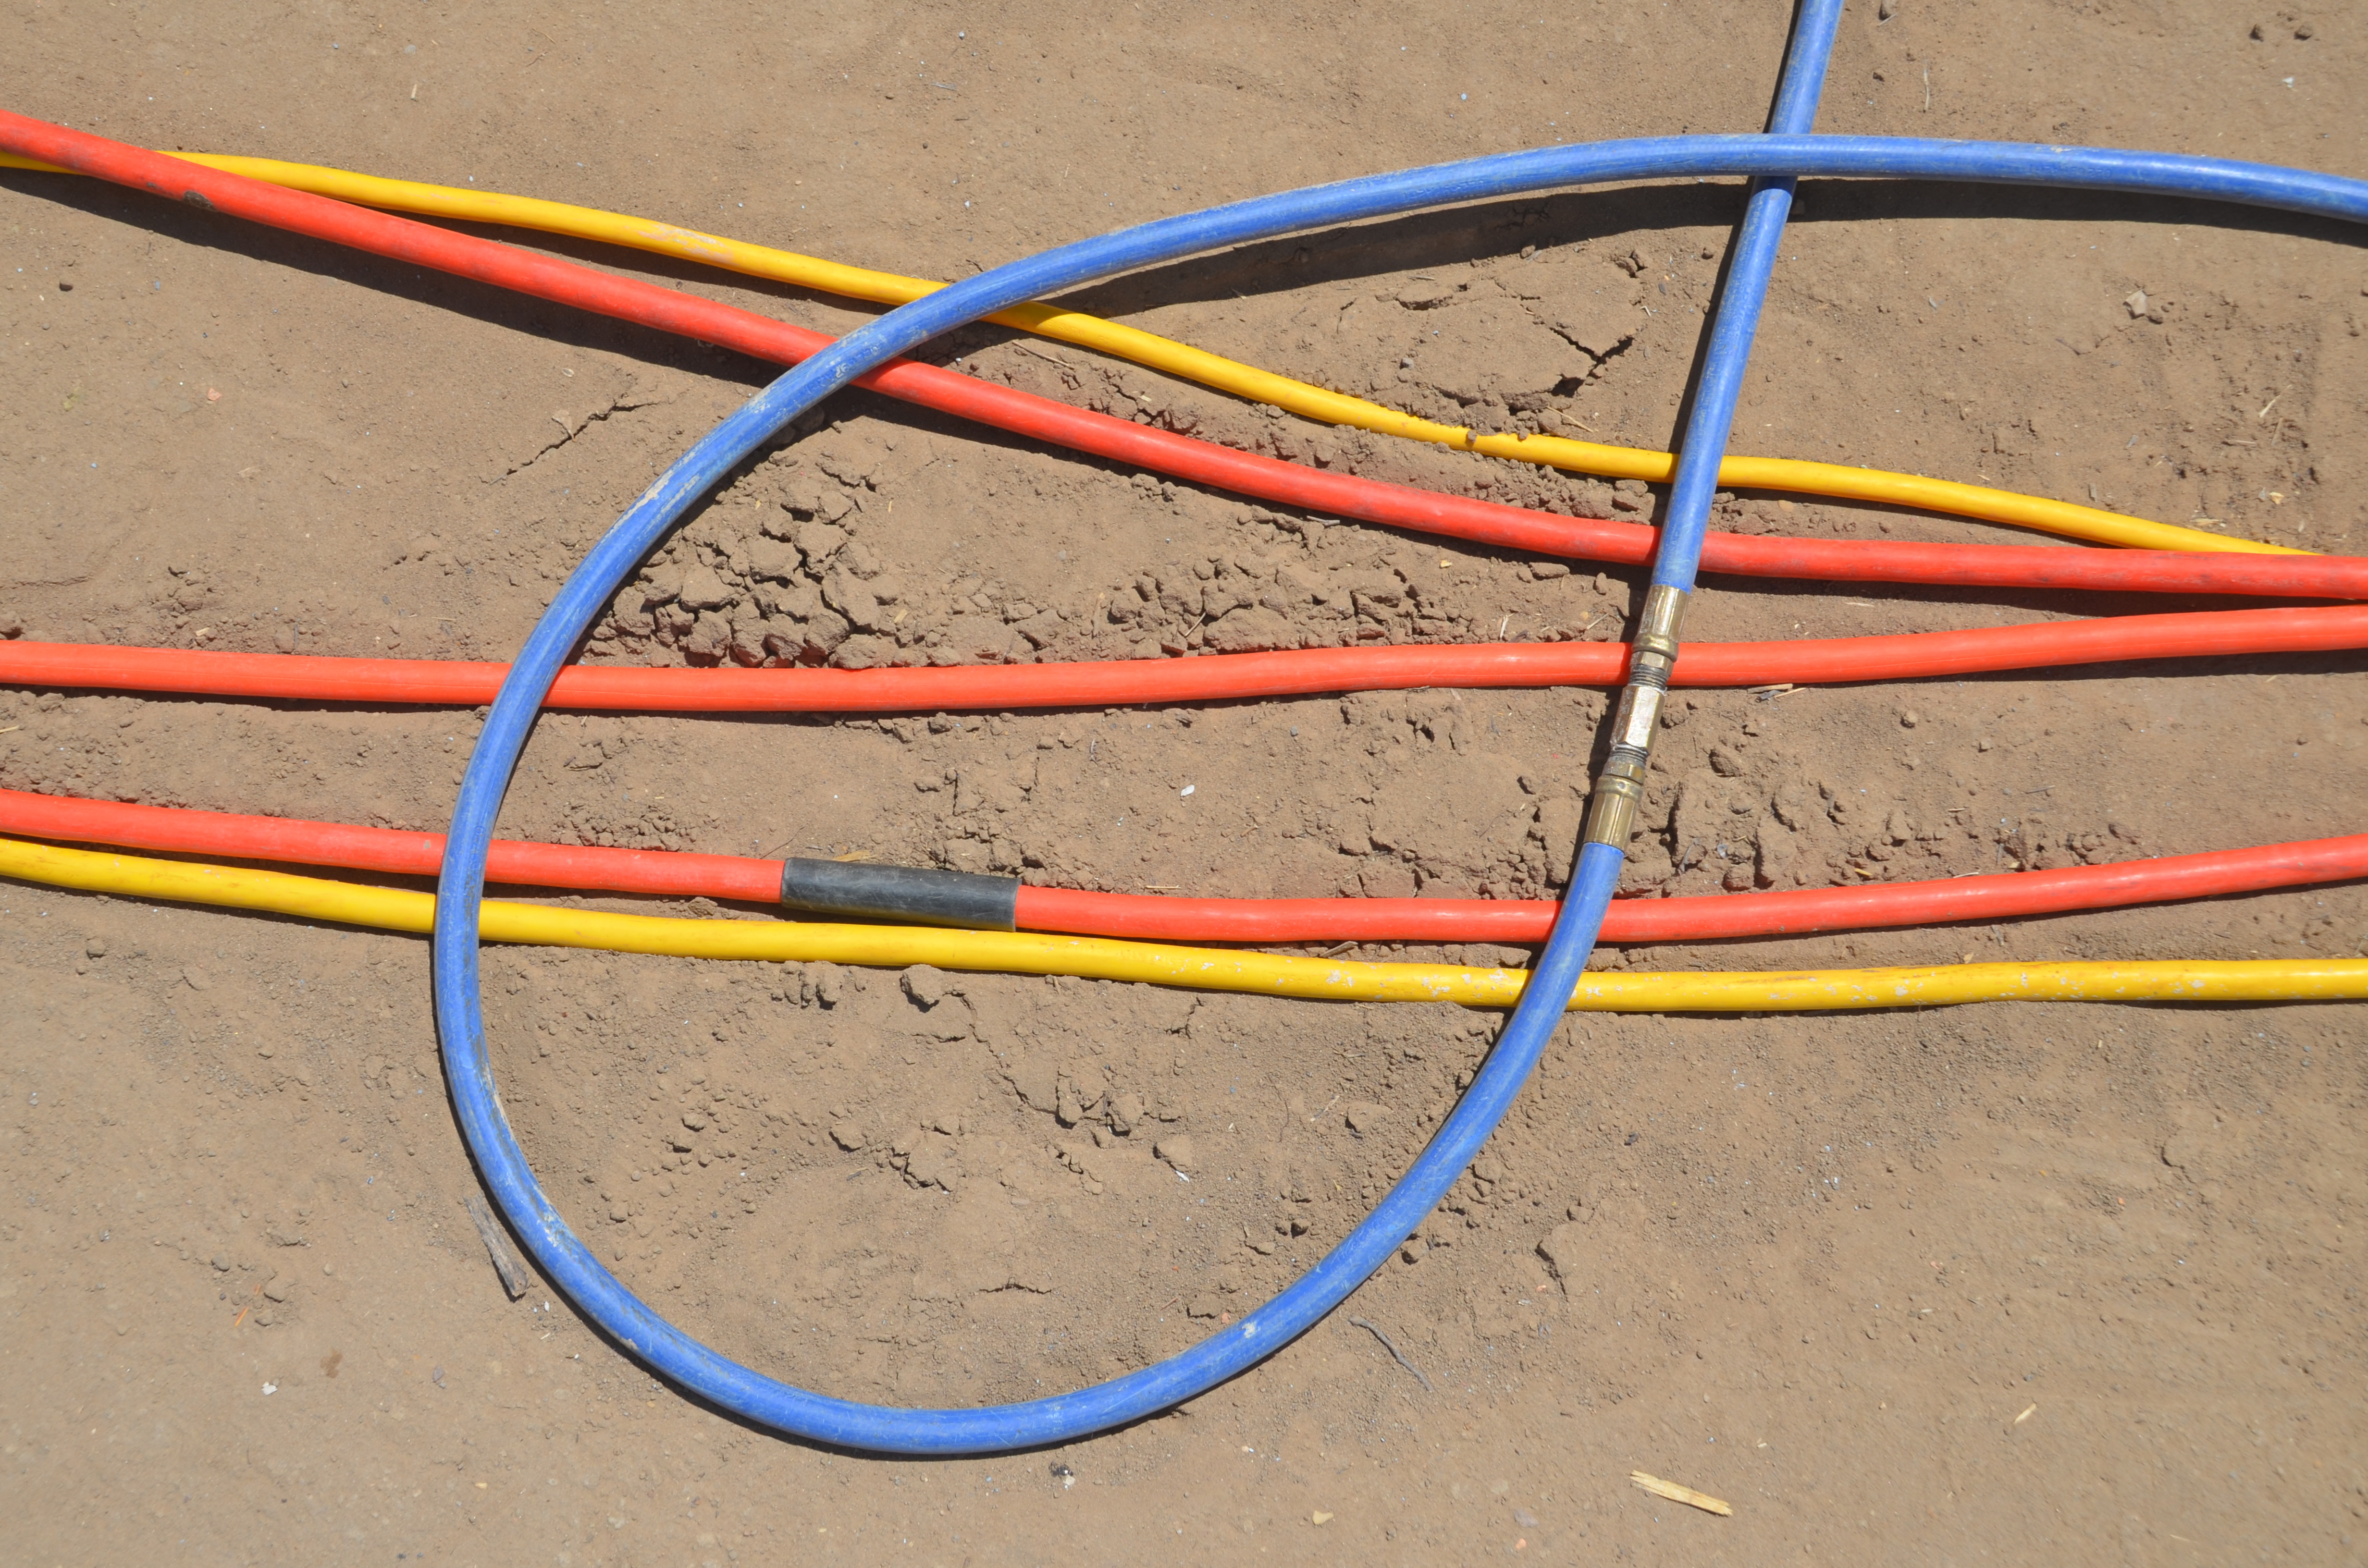 Construction air hoses on sand